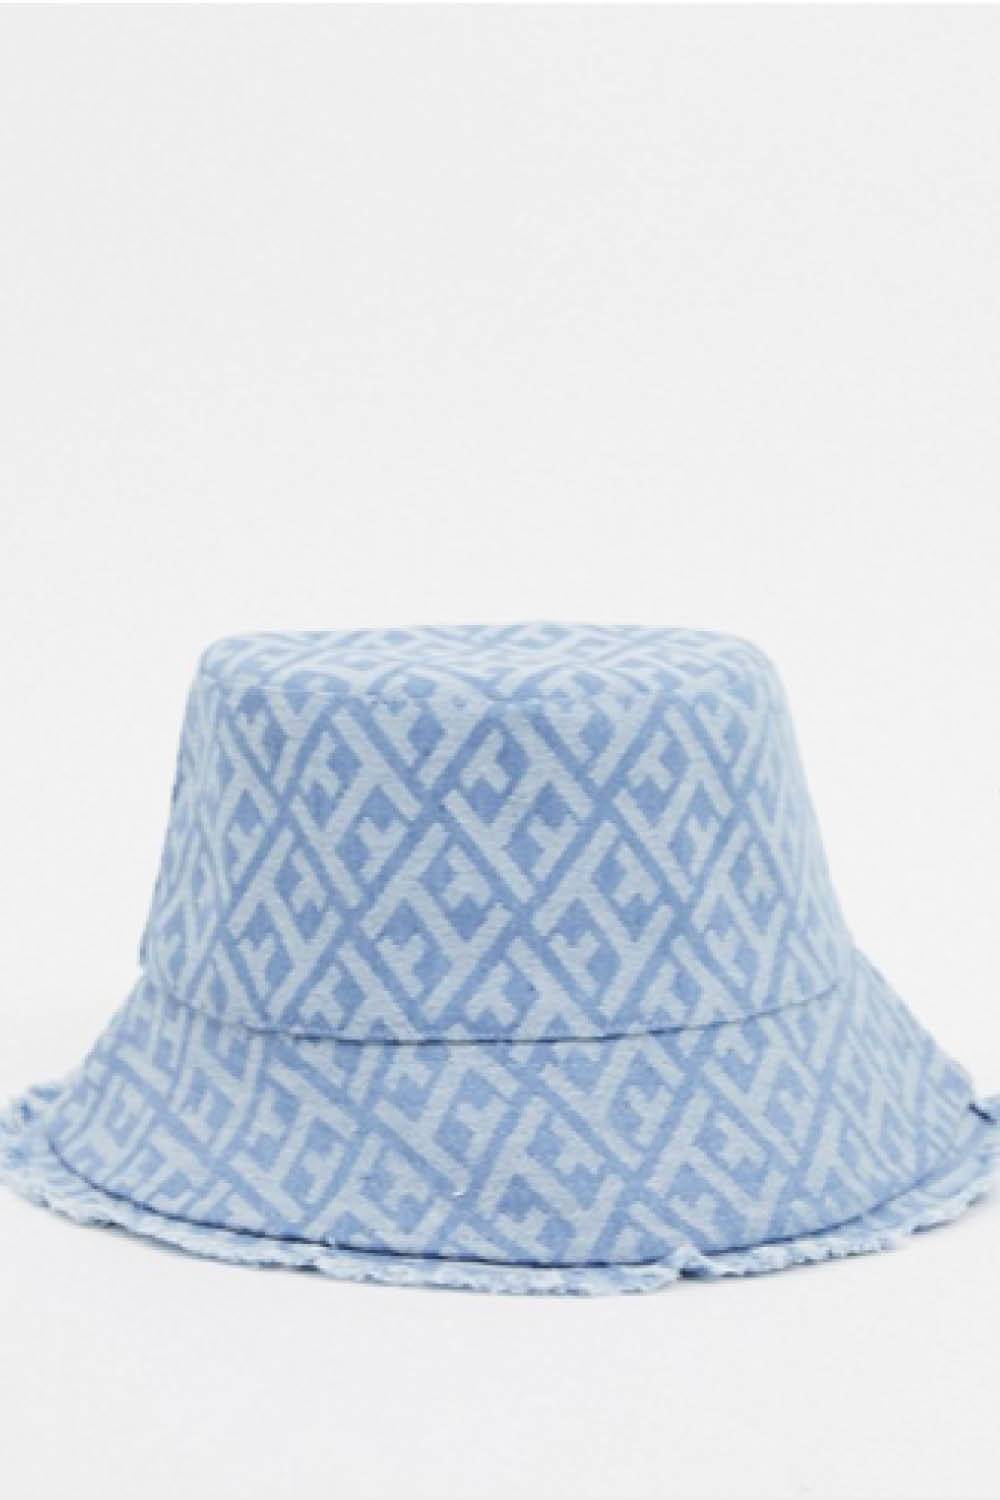 accesorios para el pelo verano 20204. sombrero pescado asos